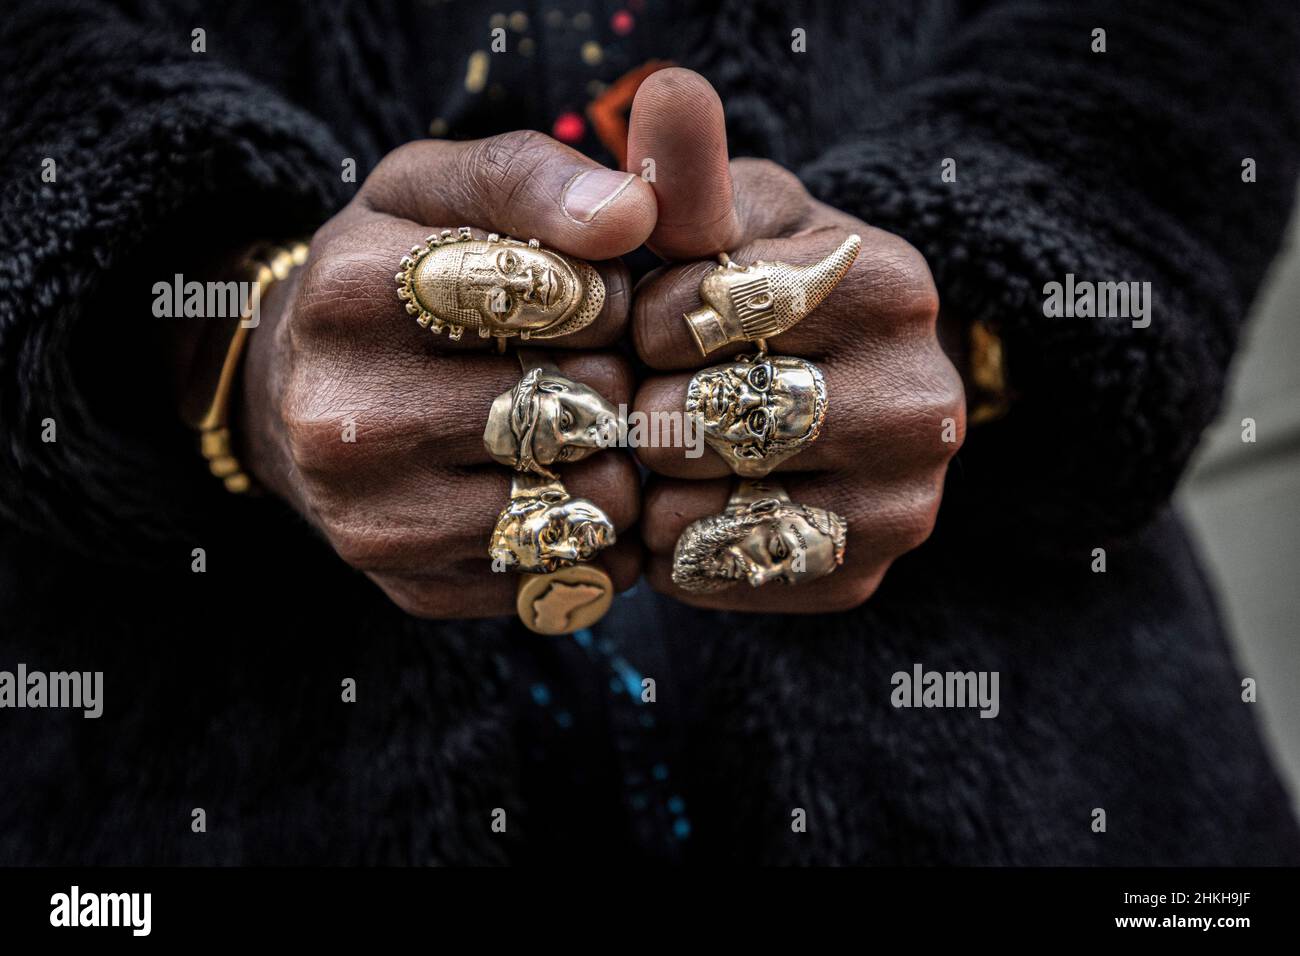 Nahaufnahme der Ringe auf der Hand Männer tragen mehrere Ringe  Stockfotografie - Alamy